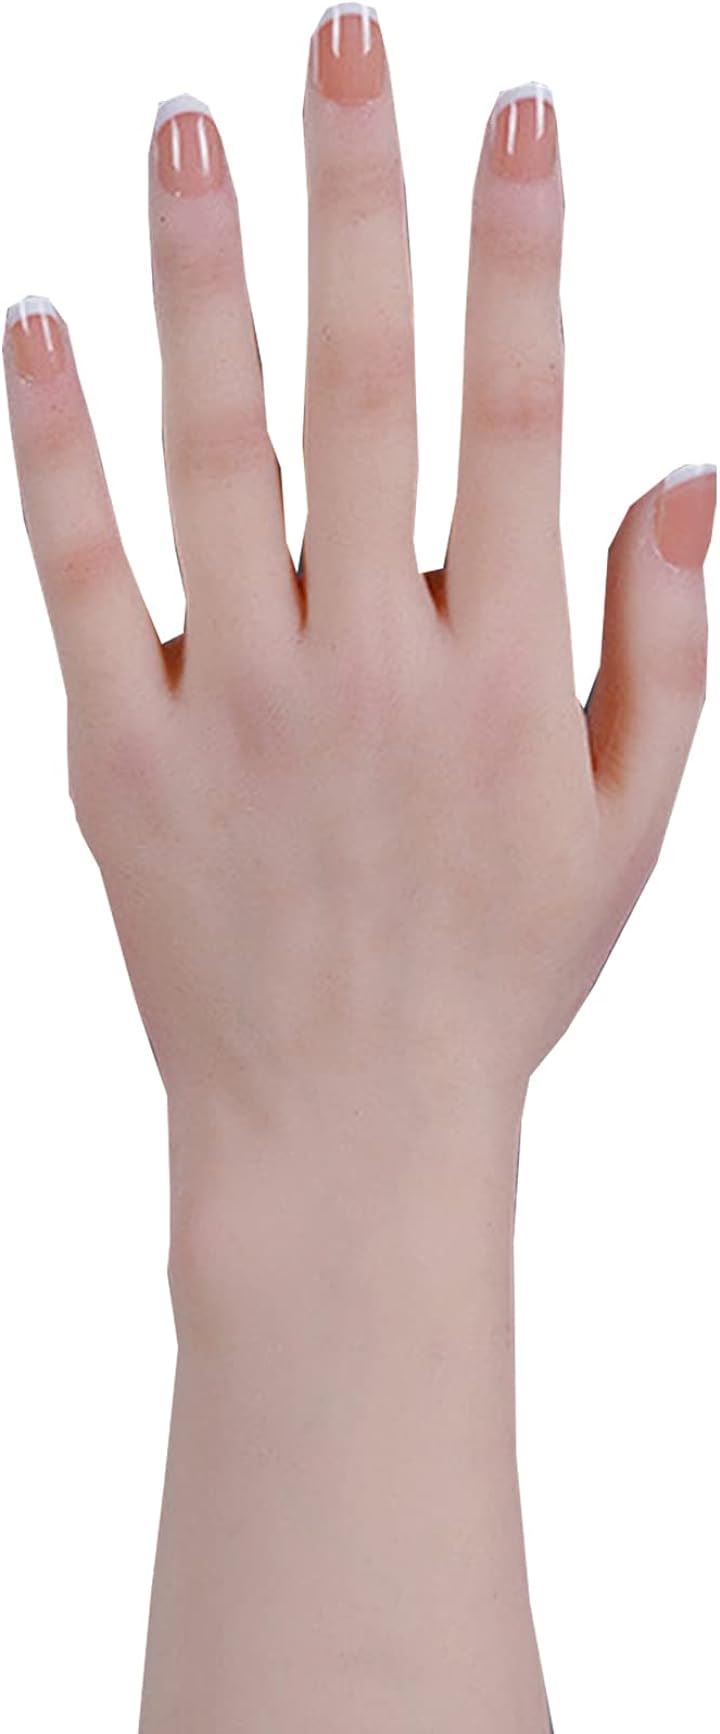 ハンドモデル 手模型 シリコン 女性 柔らかい デッサン模型 左手、骨なし